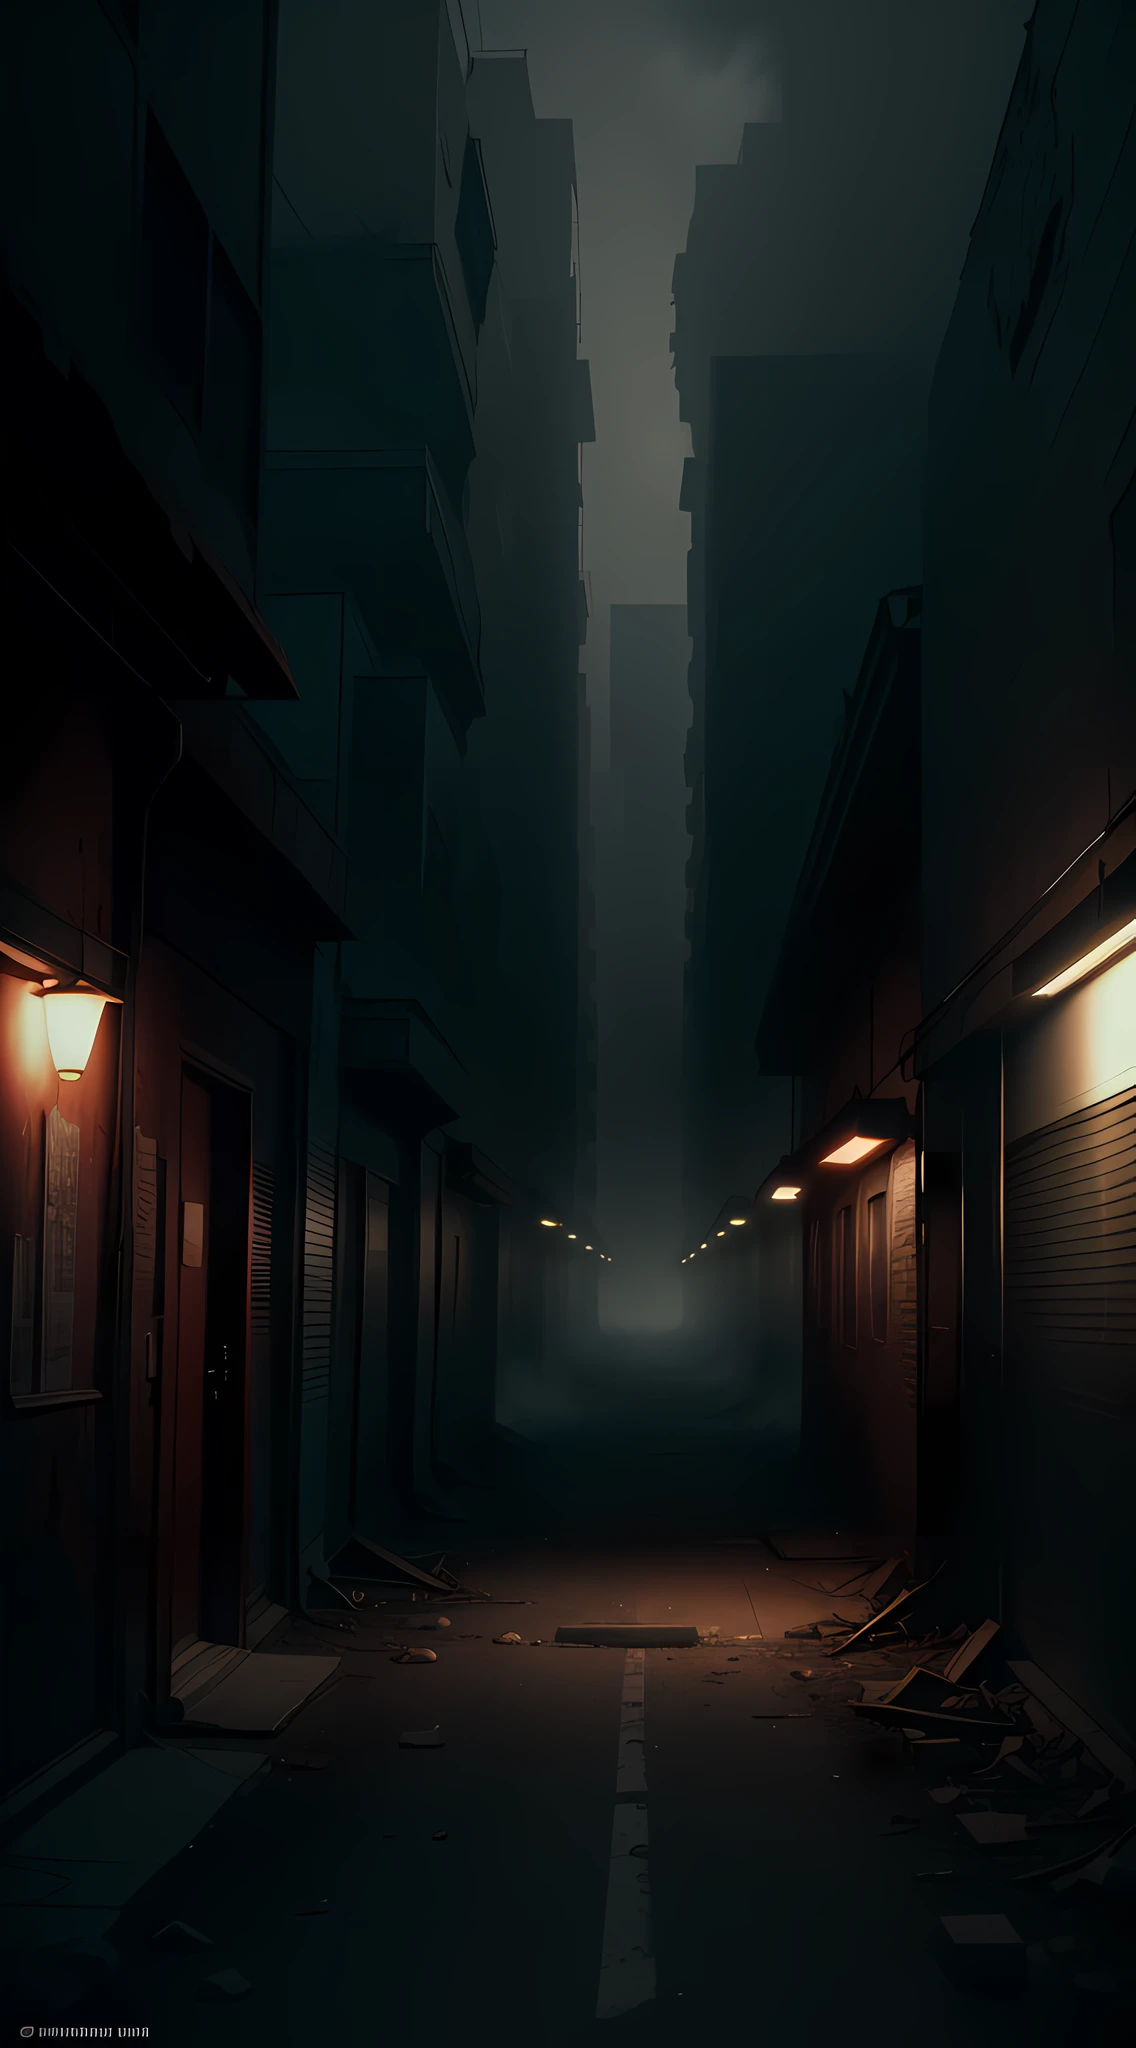 Создайте файл с высоким разрешением (8К) изображение, на котором изображен заброшенный город Централия в США., с элементами, вдохновленными вселенной фильма Silent Hill. Добавьте густой туман и элементы плавающего пепла., создание мрачной и сюрреалистической атмосферы. Используйте ненасыщенную цветовую палитру, выделение оттенков красного и коричневого, вызвать ощущение ужаса и тайны, присутствующее в Silent Hill."